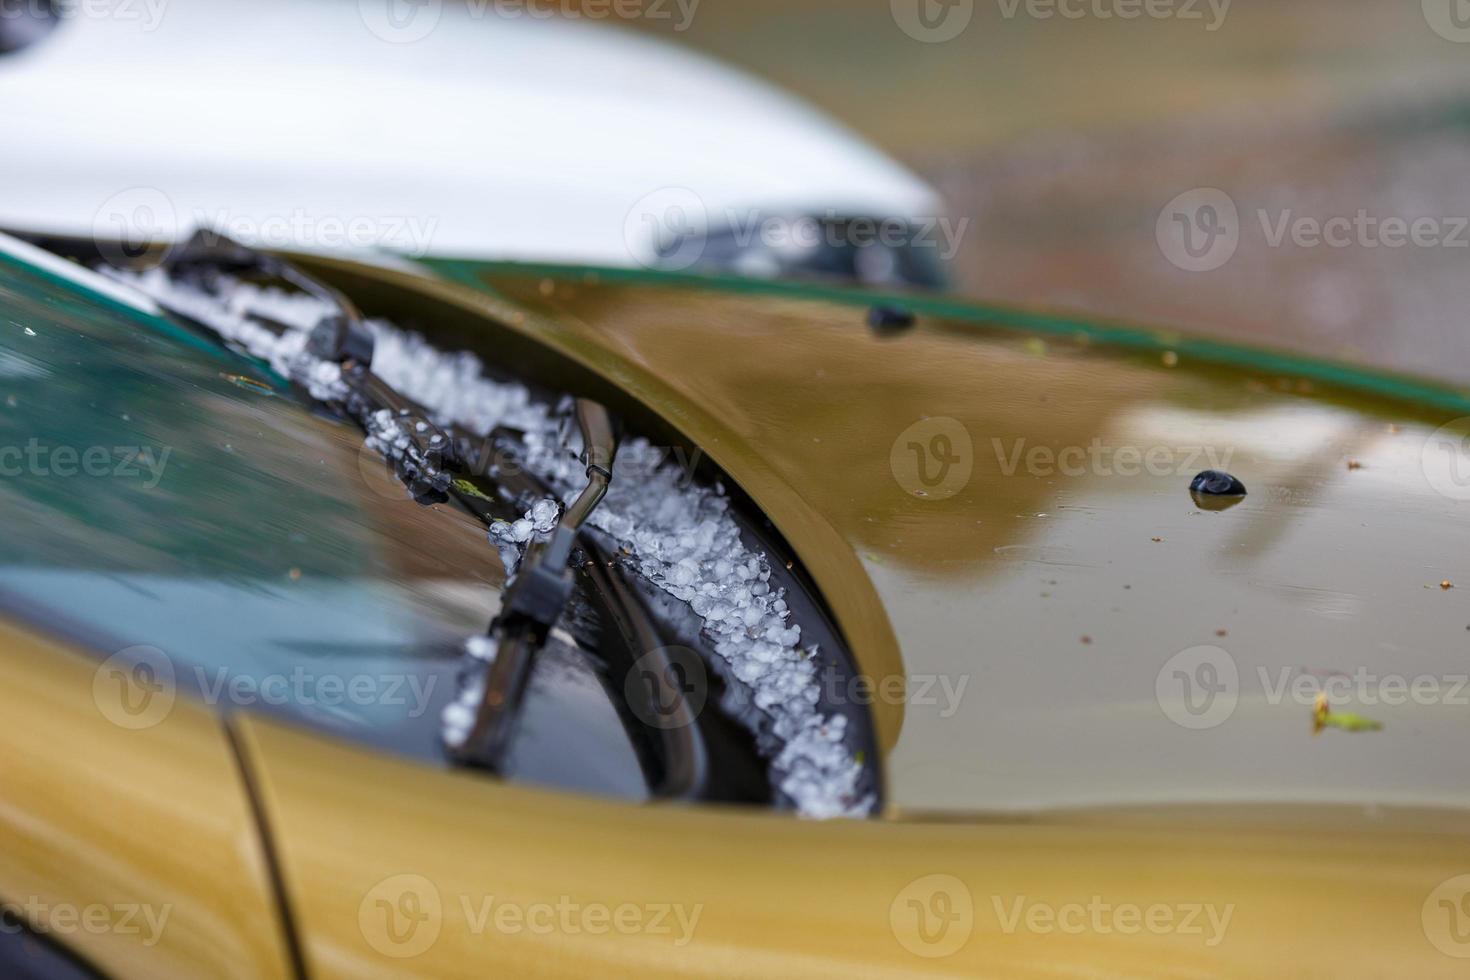 pequenas bolas de gelo de granizo no capô do carro amarelo após forte tempestade de verão foto